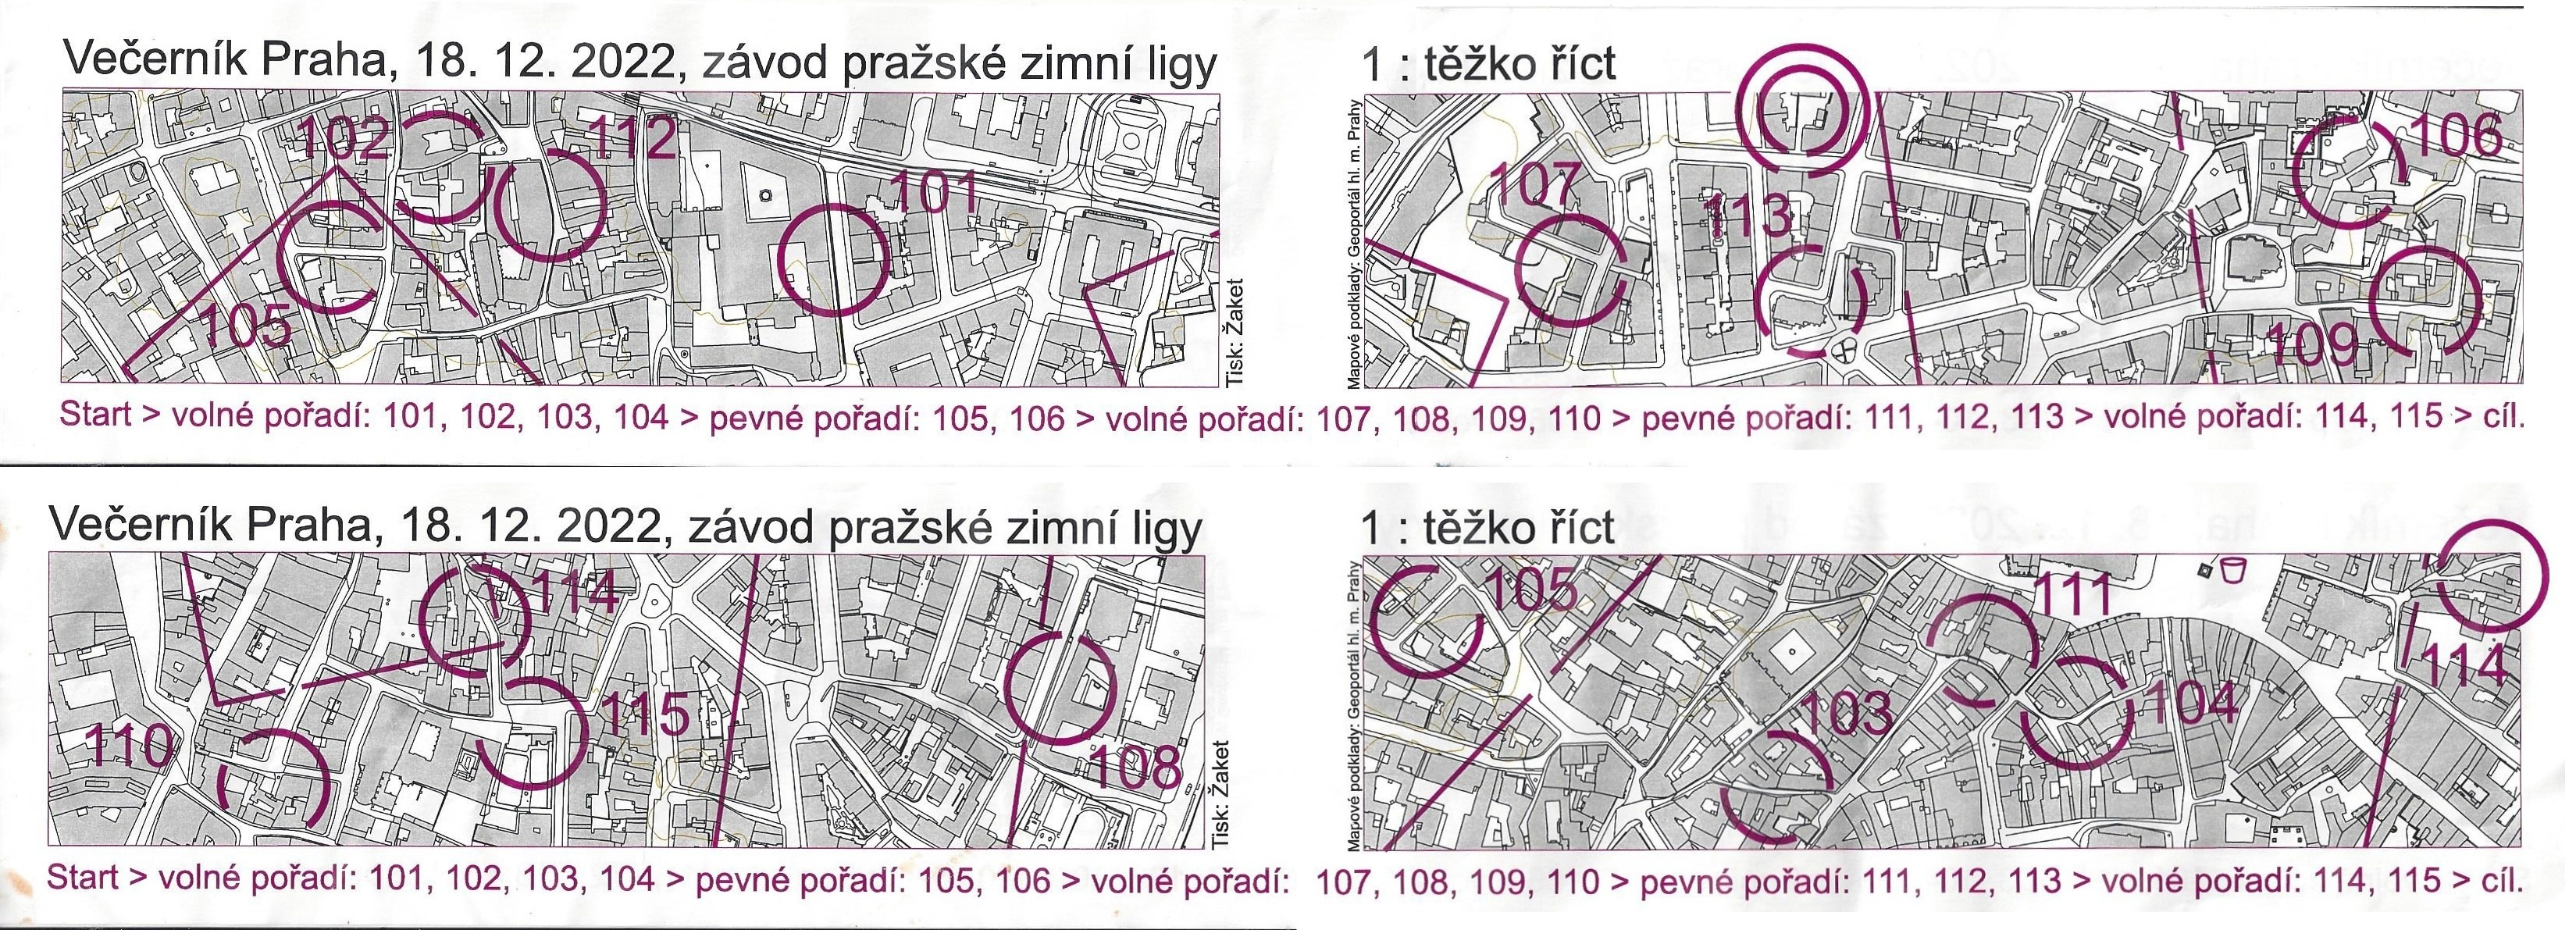 Večeník Praha 2022 - Staré město (18.12.2022)